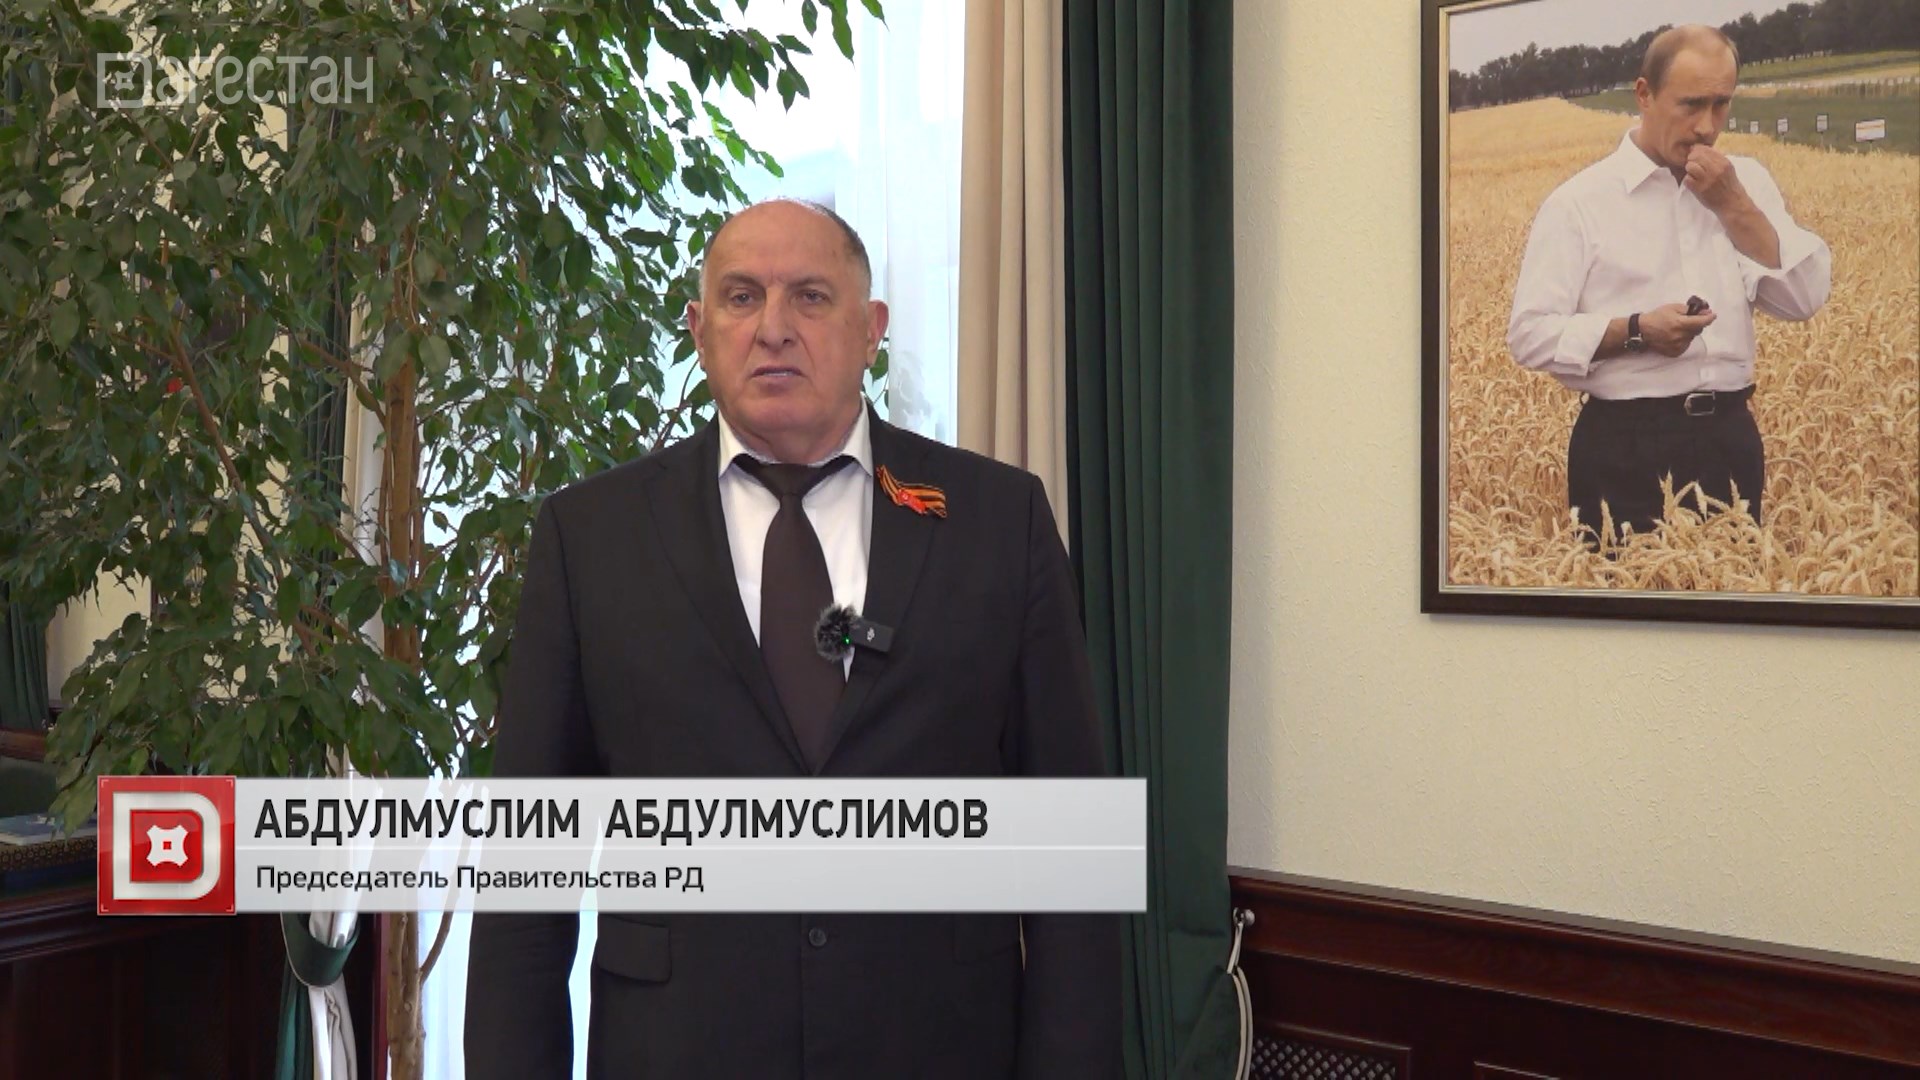 Абдулмуслим Абдулмуслимов прокомментировал вступление в должность президента России В.В.Путина